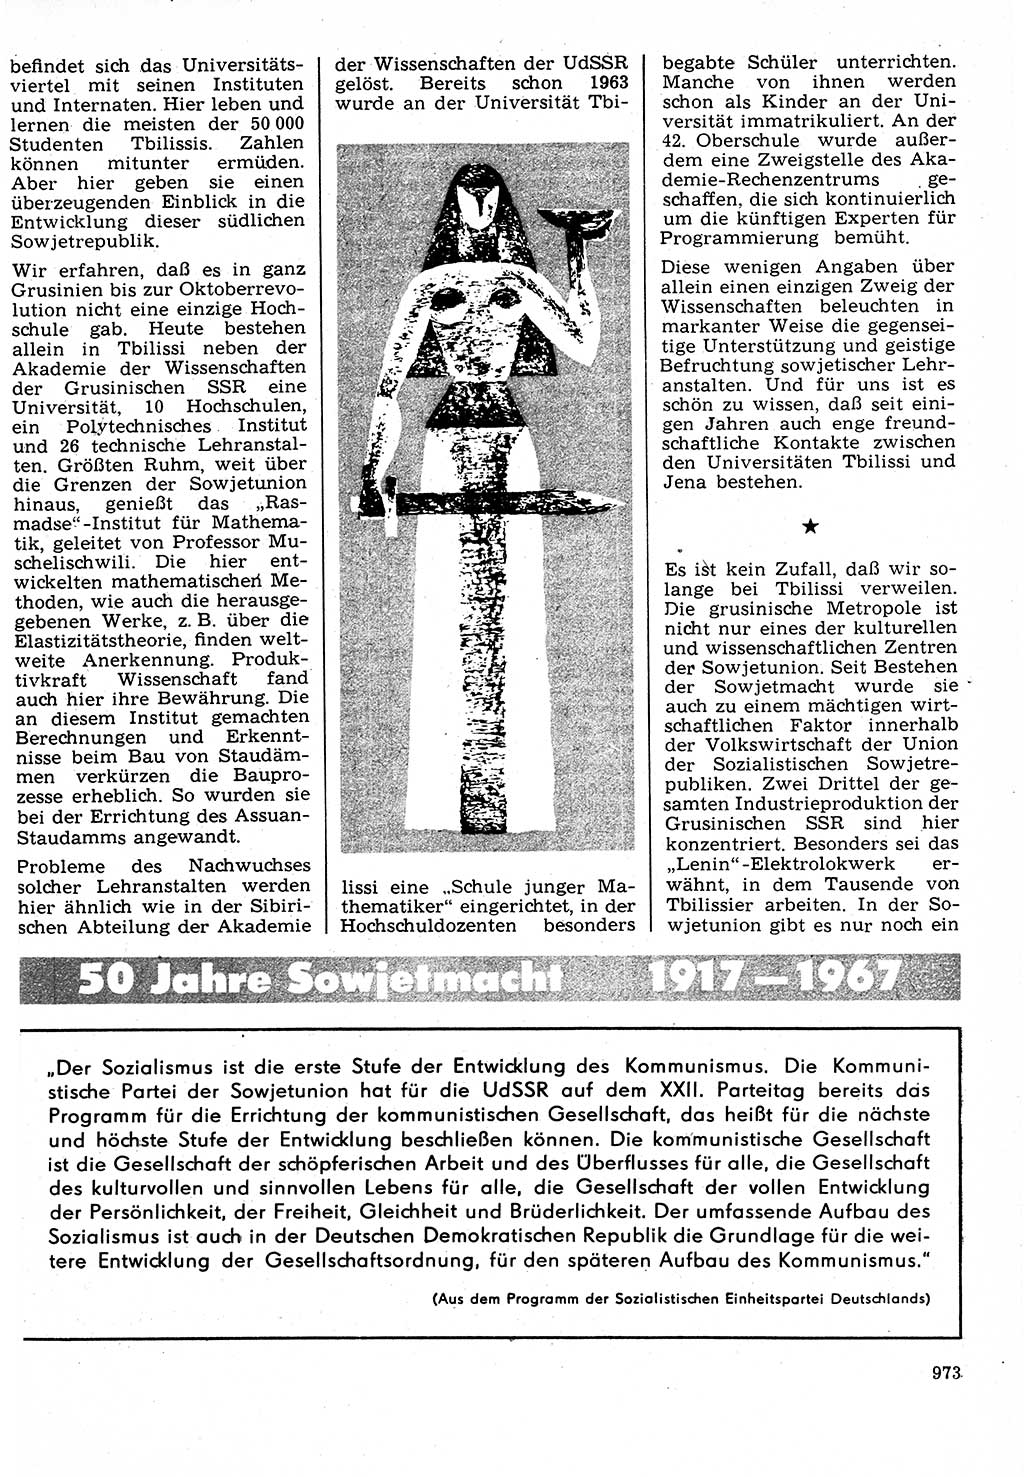 Neuer Weg (NW), Organ des Zentralkomitees (ZK) der SED (Sozialistische Einheitspartei Deutschlands) für Fragen des Parteilebens, 22. Jahrgang [Deutsche Demokratische Republik (DDR)] 1967, Seite 973 (NW ZK SED DDR 1967, S. 973)